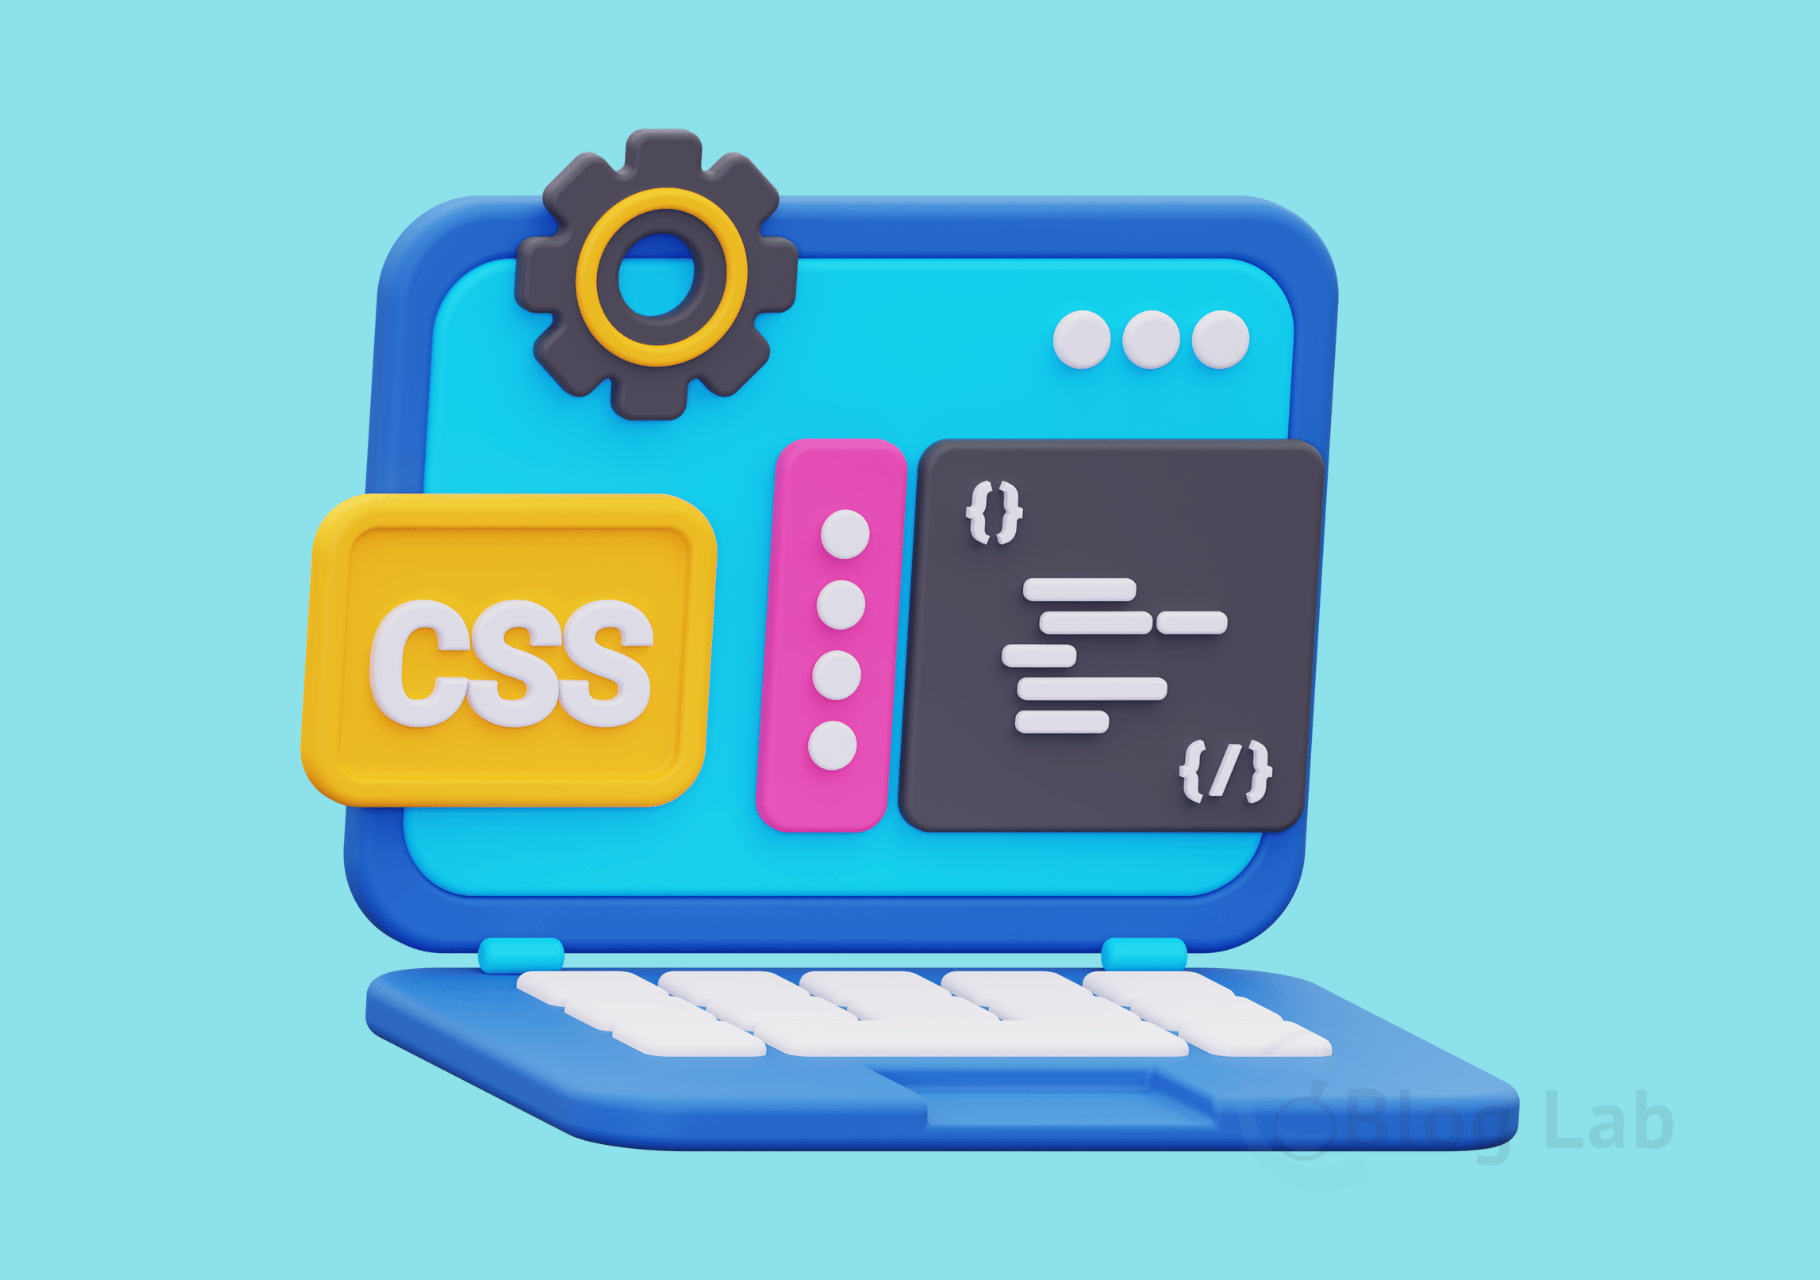 Pengertian CSS, Contoh, Manfaat dan Fungsinya